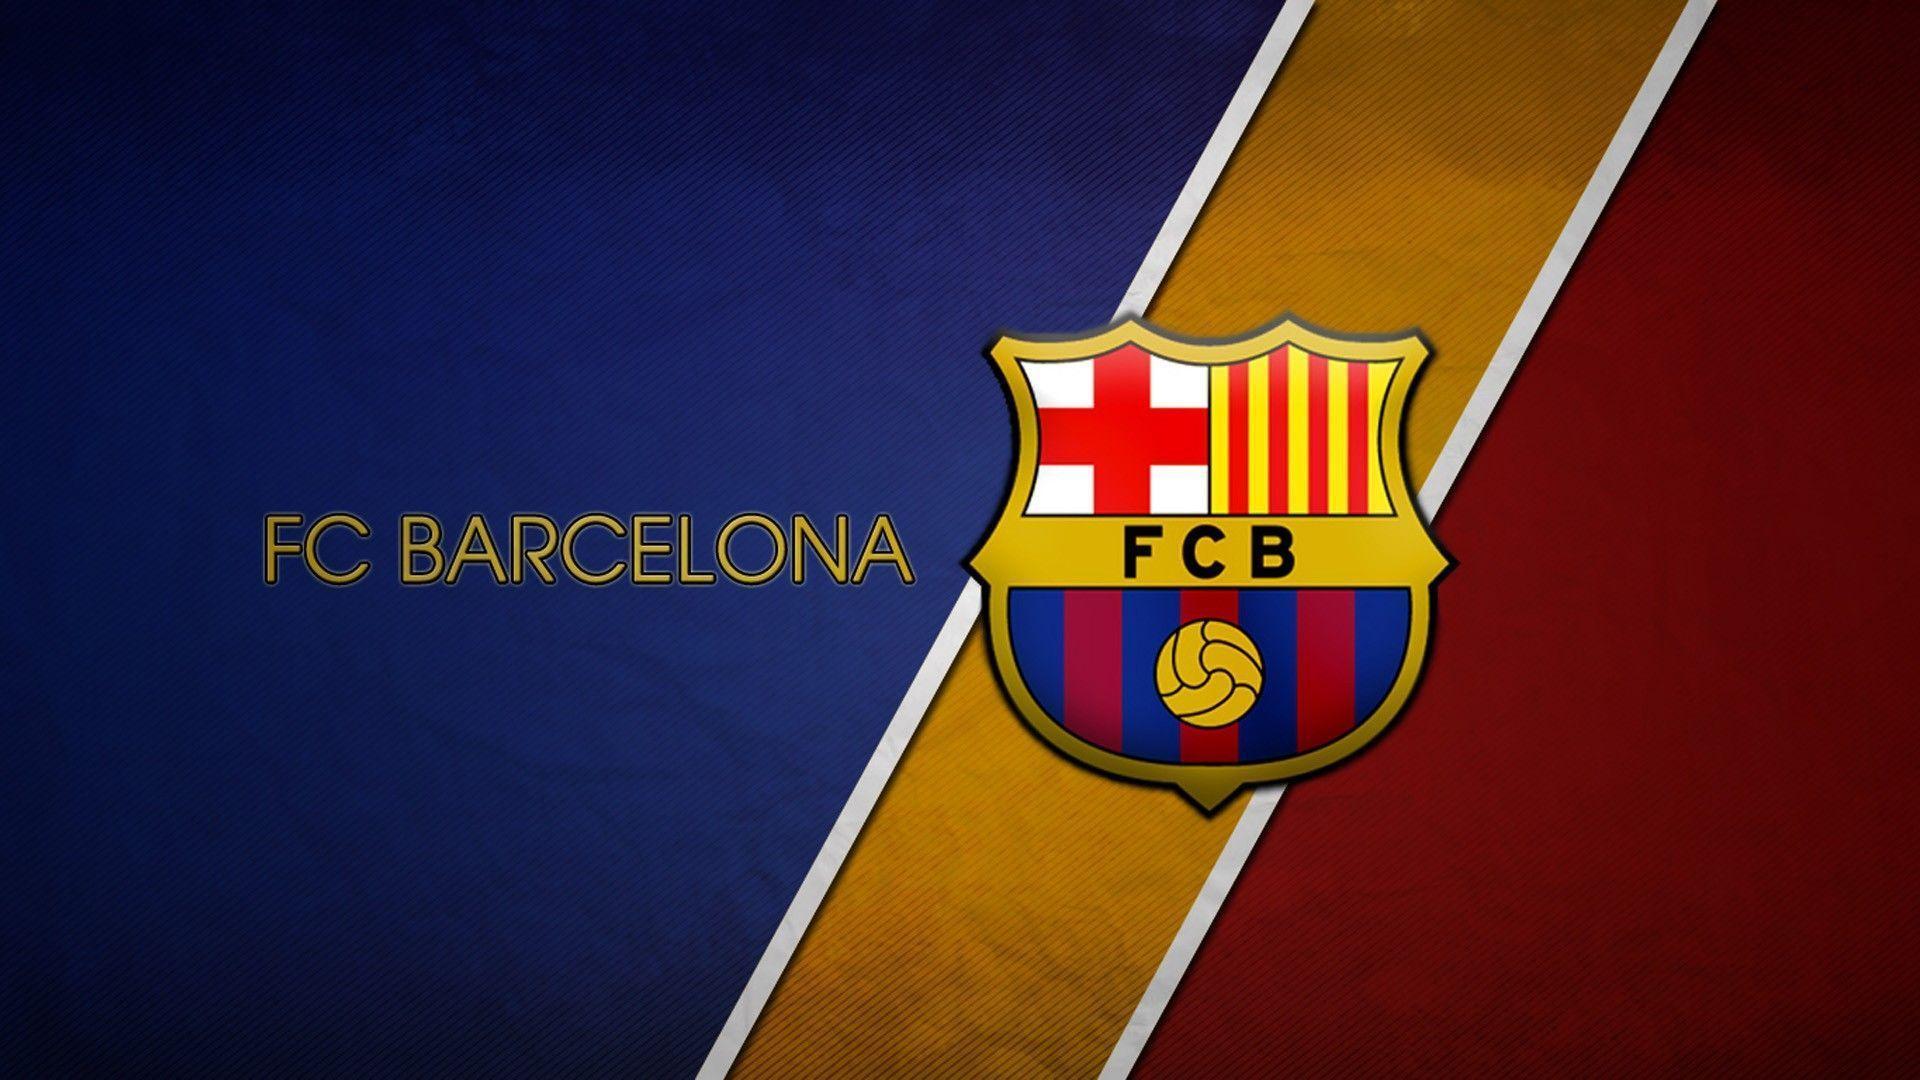 Fc Barcelona Football Logo Full HD Wallpaper Wallpaper